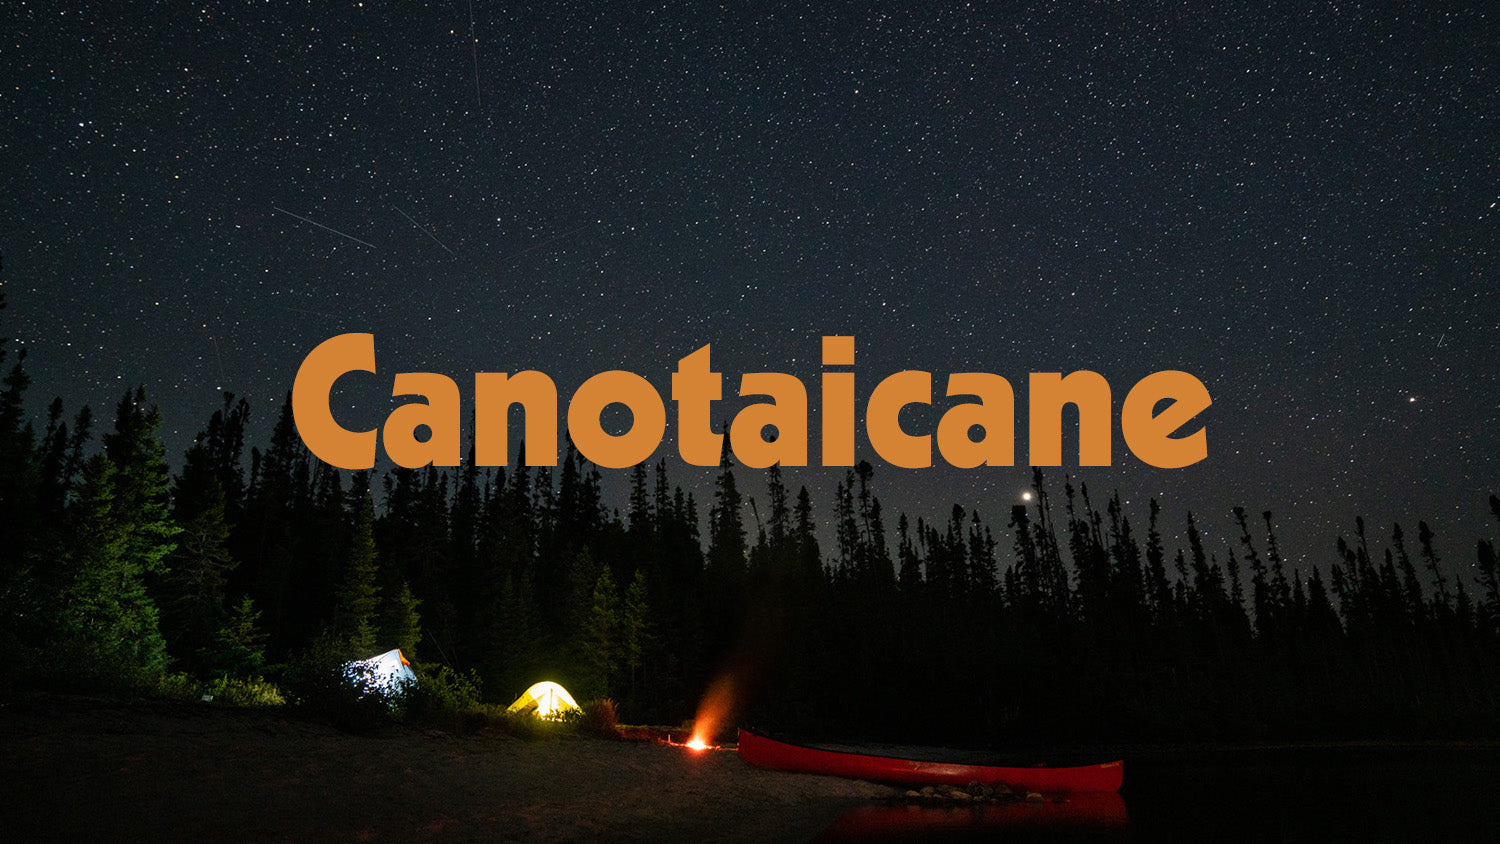 Canotaicane